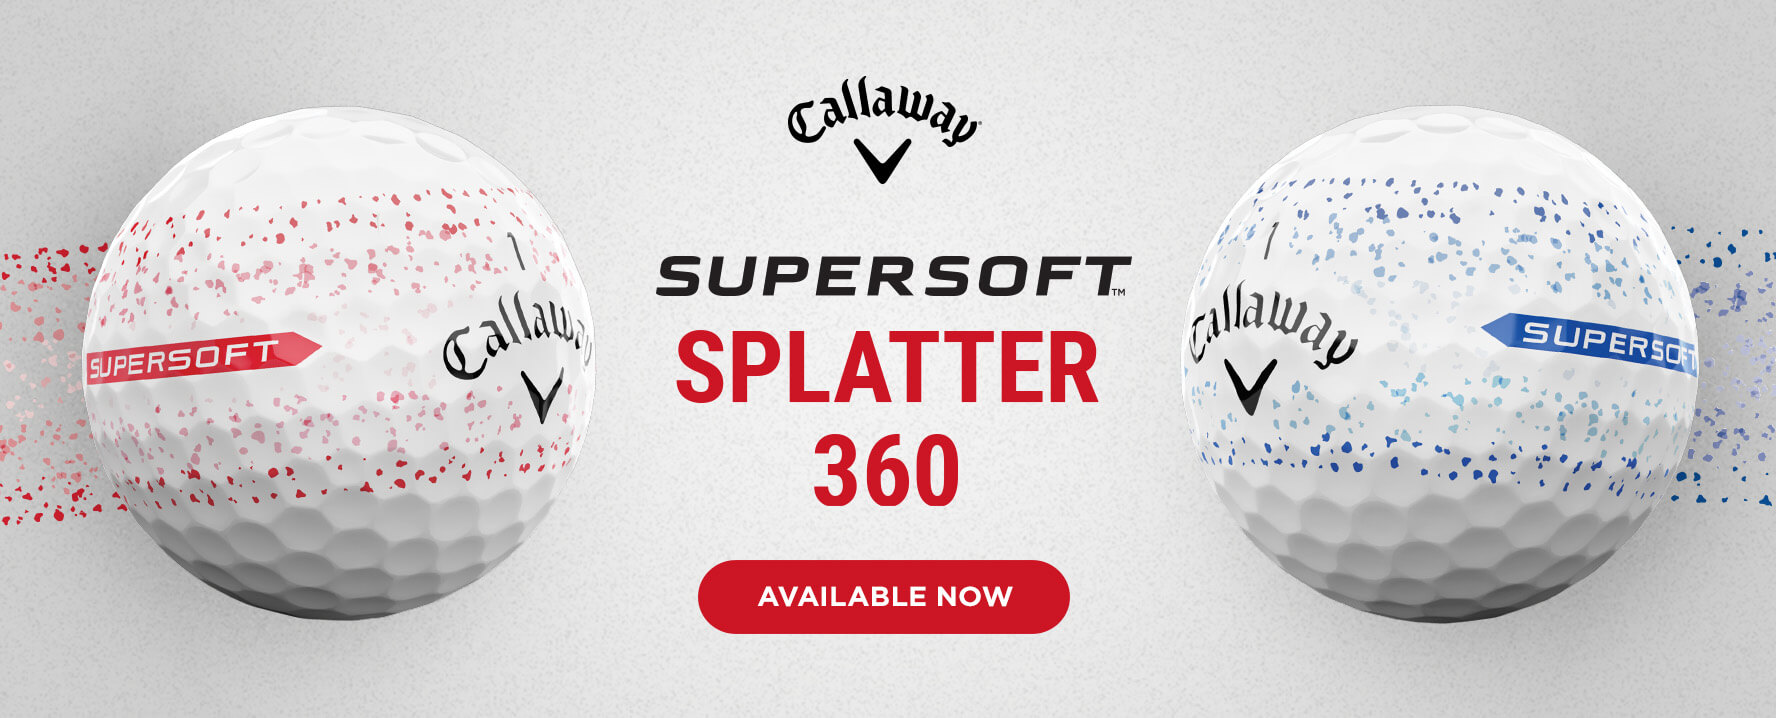 Callway Supersoft Splatter